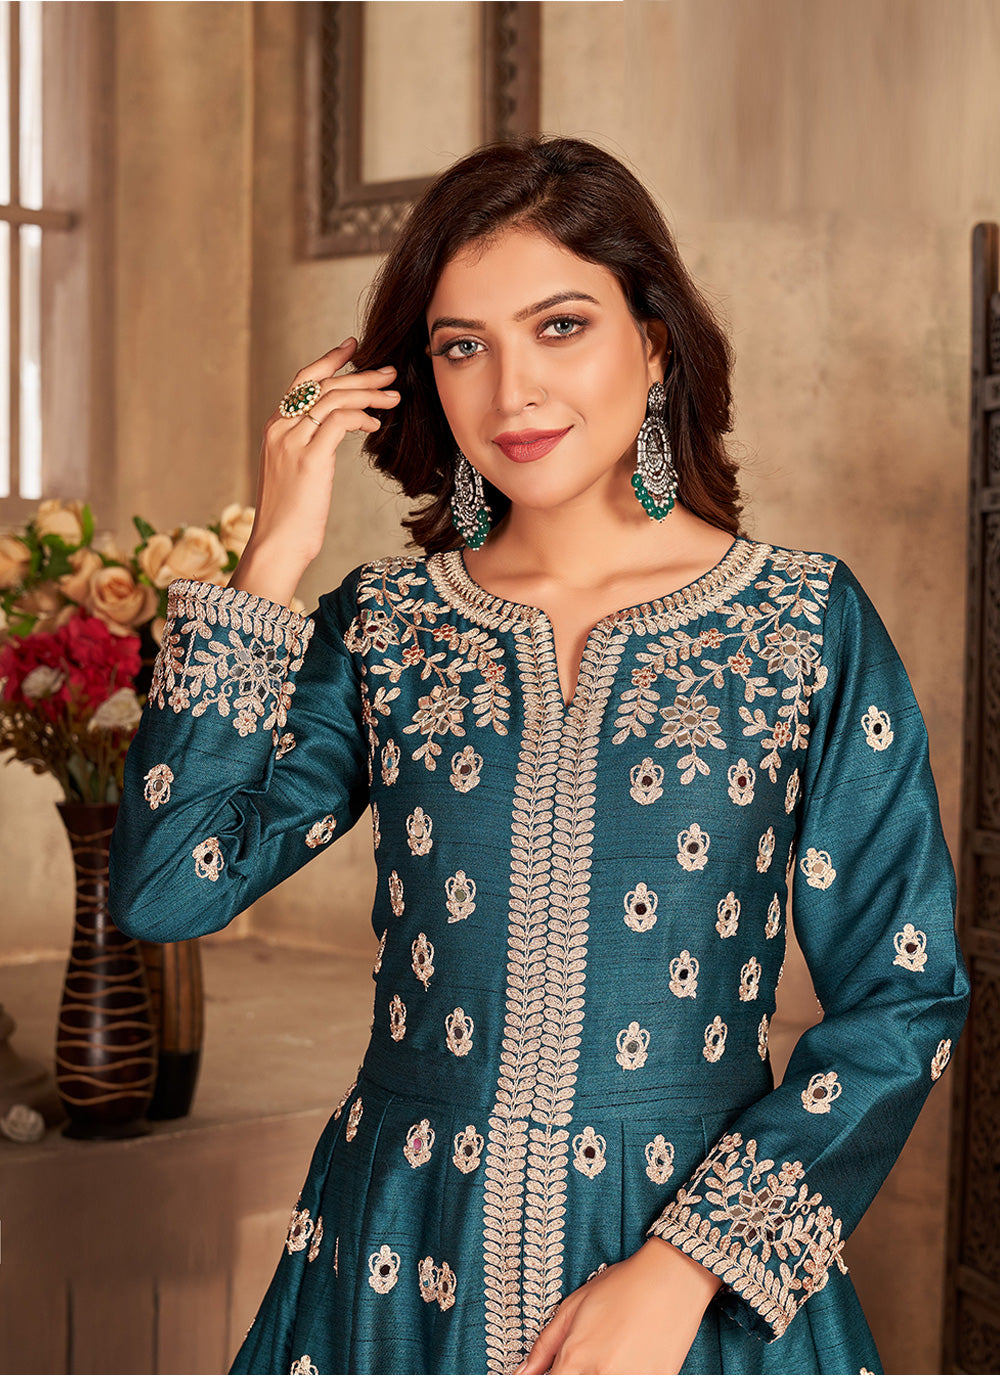 Bella Fancy Dresses Salwar Kameez Teal Blue Art Silk Floor Length Designer Suit